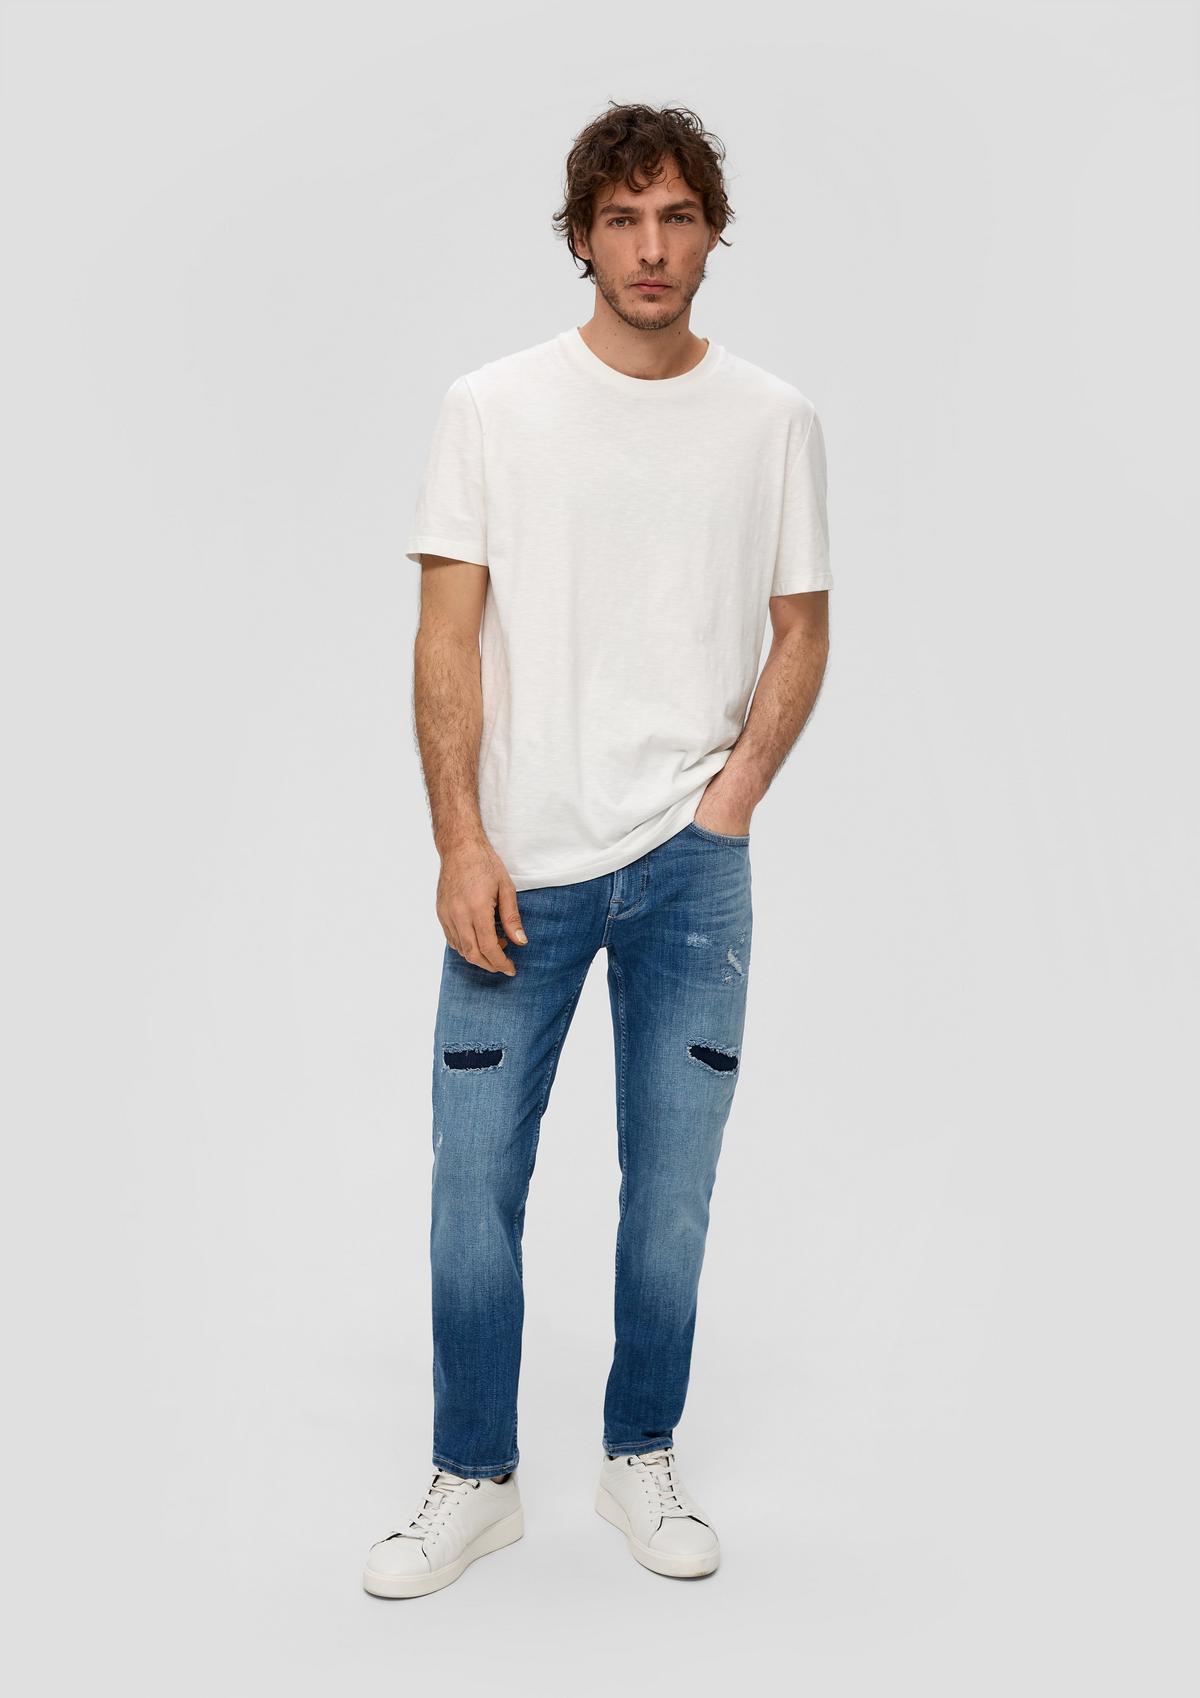 Nelio jeans / slim fit / mid rise / slim leg